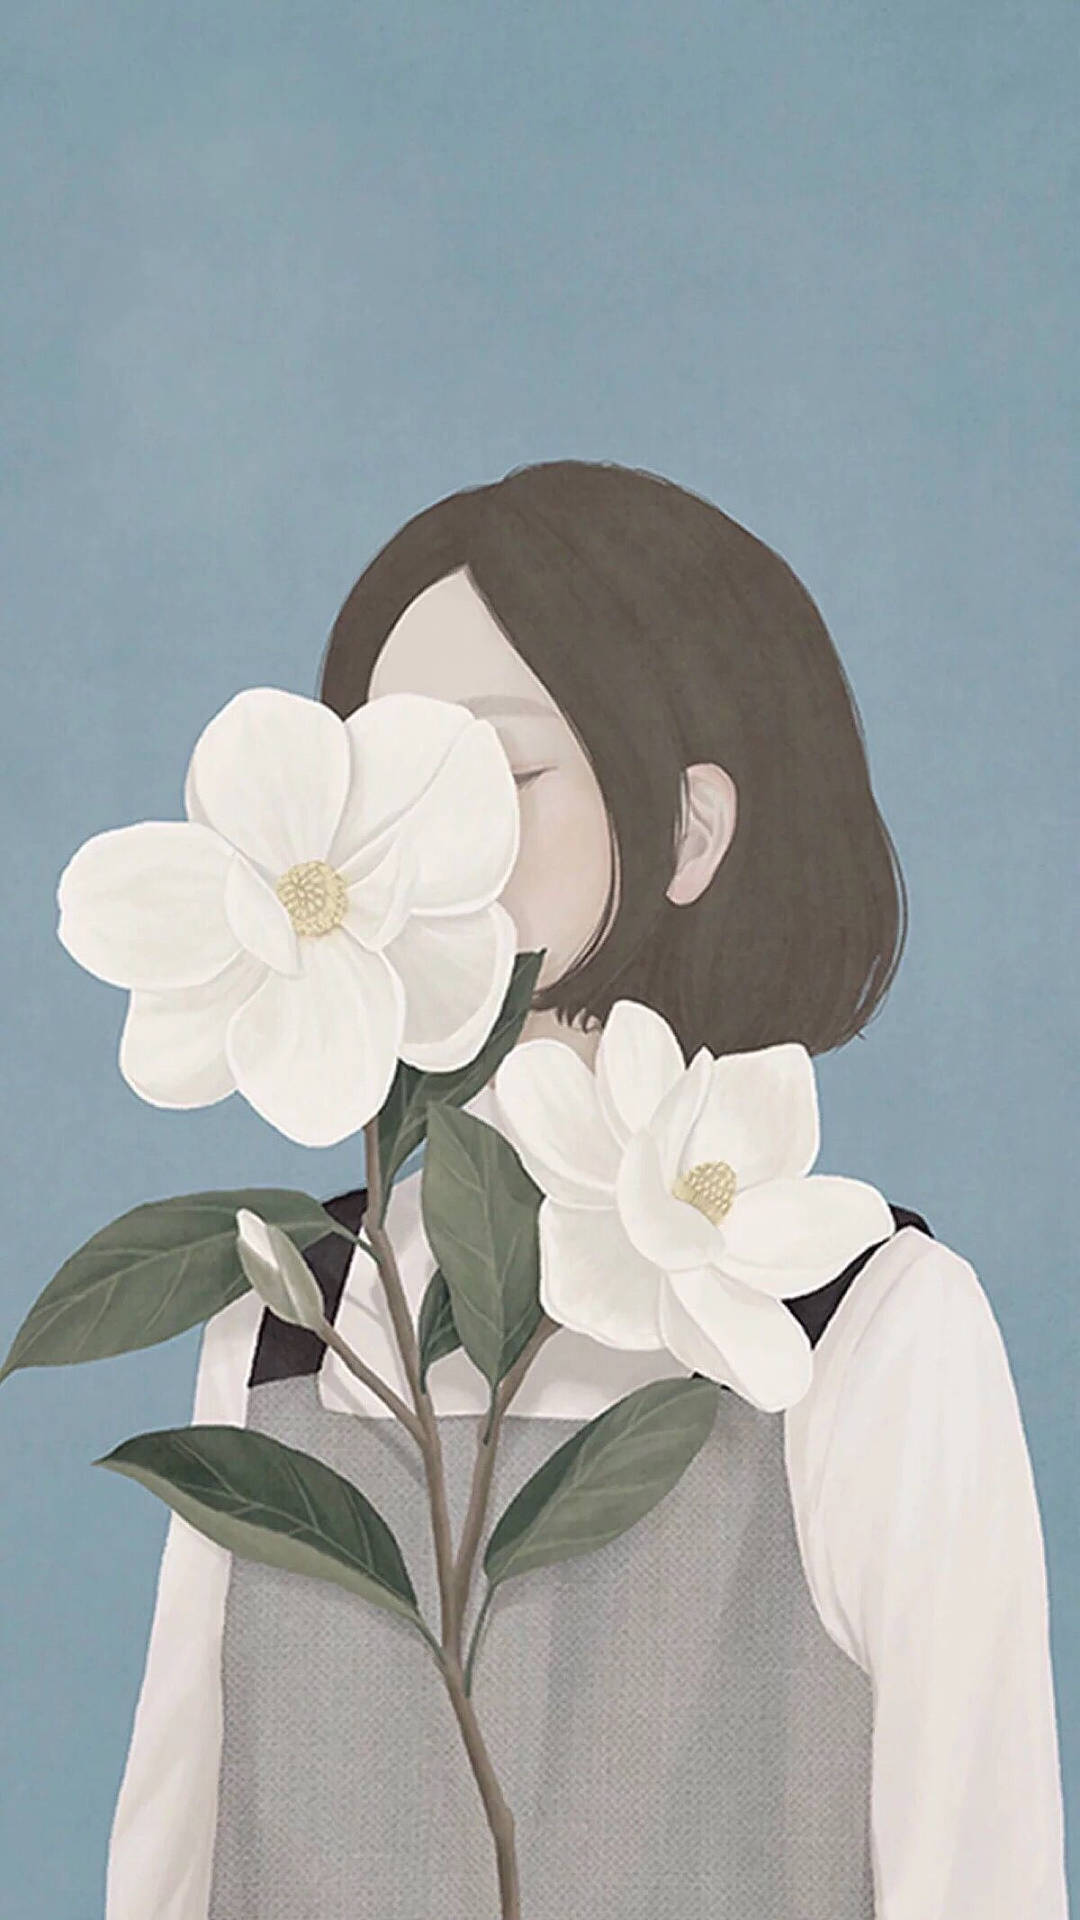 One-sided Love Flower Girl Art